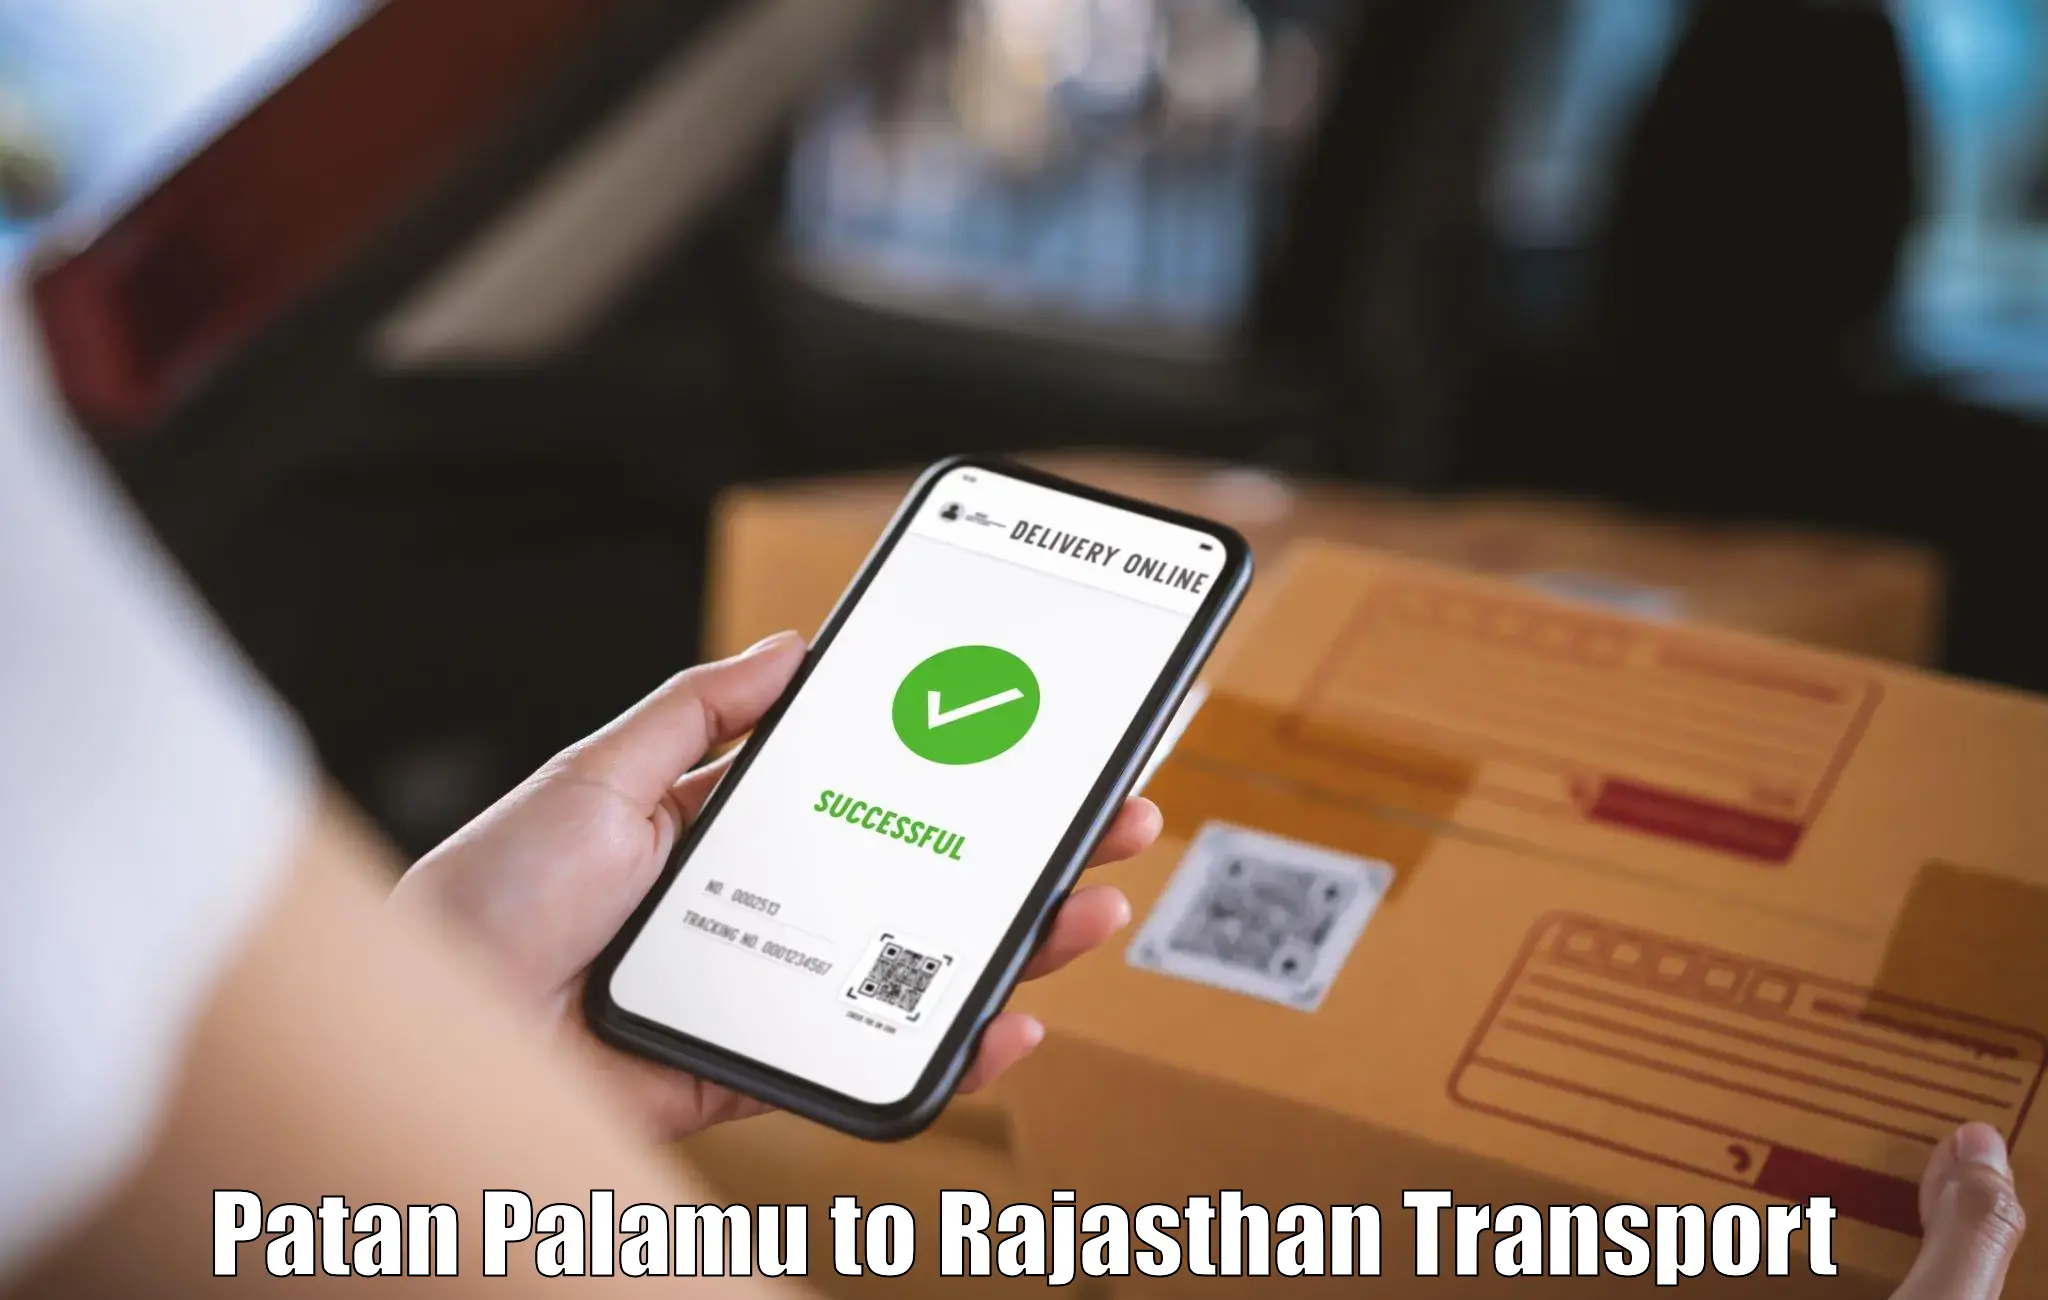 India truck logistics services Patan Palamu to Kapasan